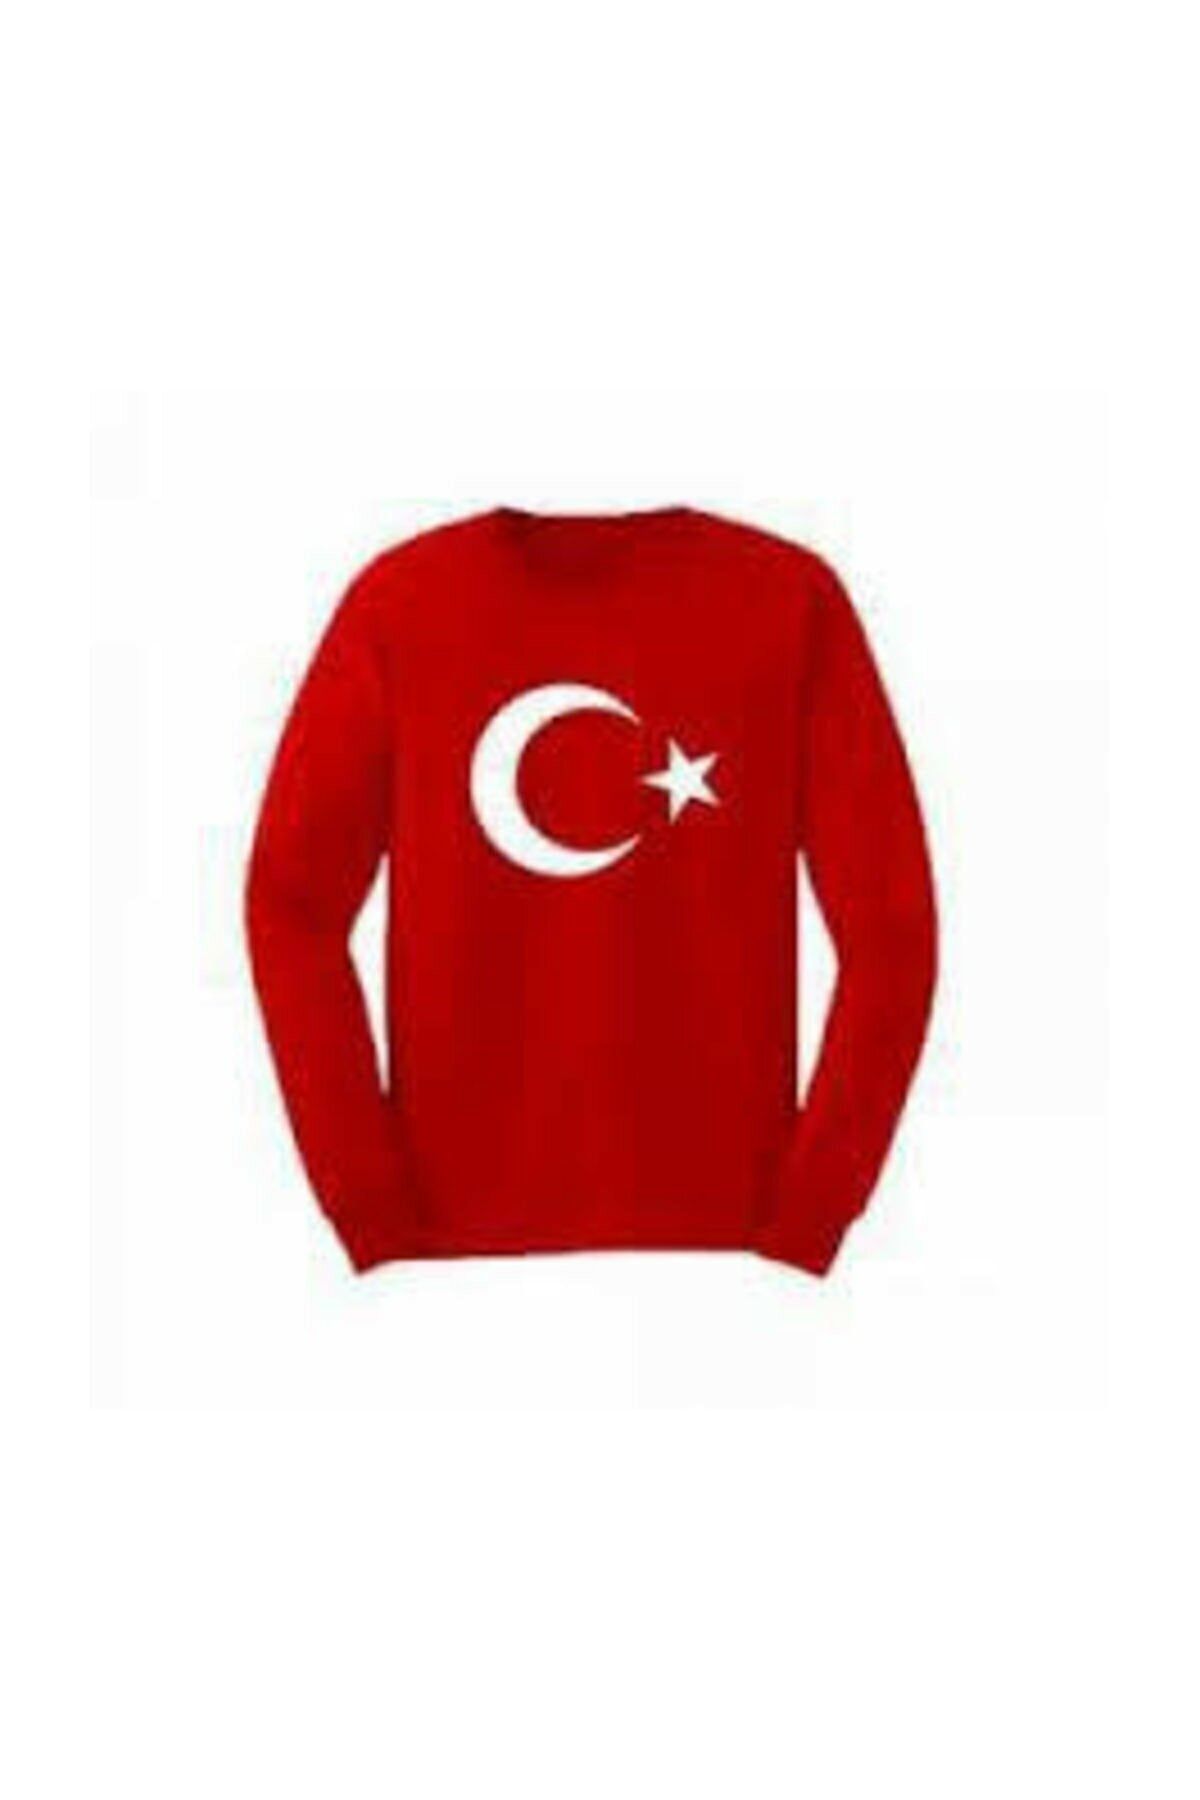 Dragora Unısex Çocuk Ay Yıldızlı Bayrak Baskılı Likralı Süper Compac Penye Badi Kırmızı T-shirt